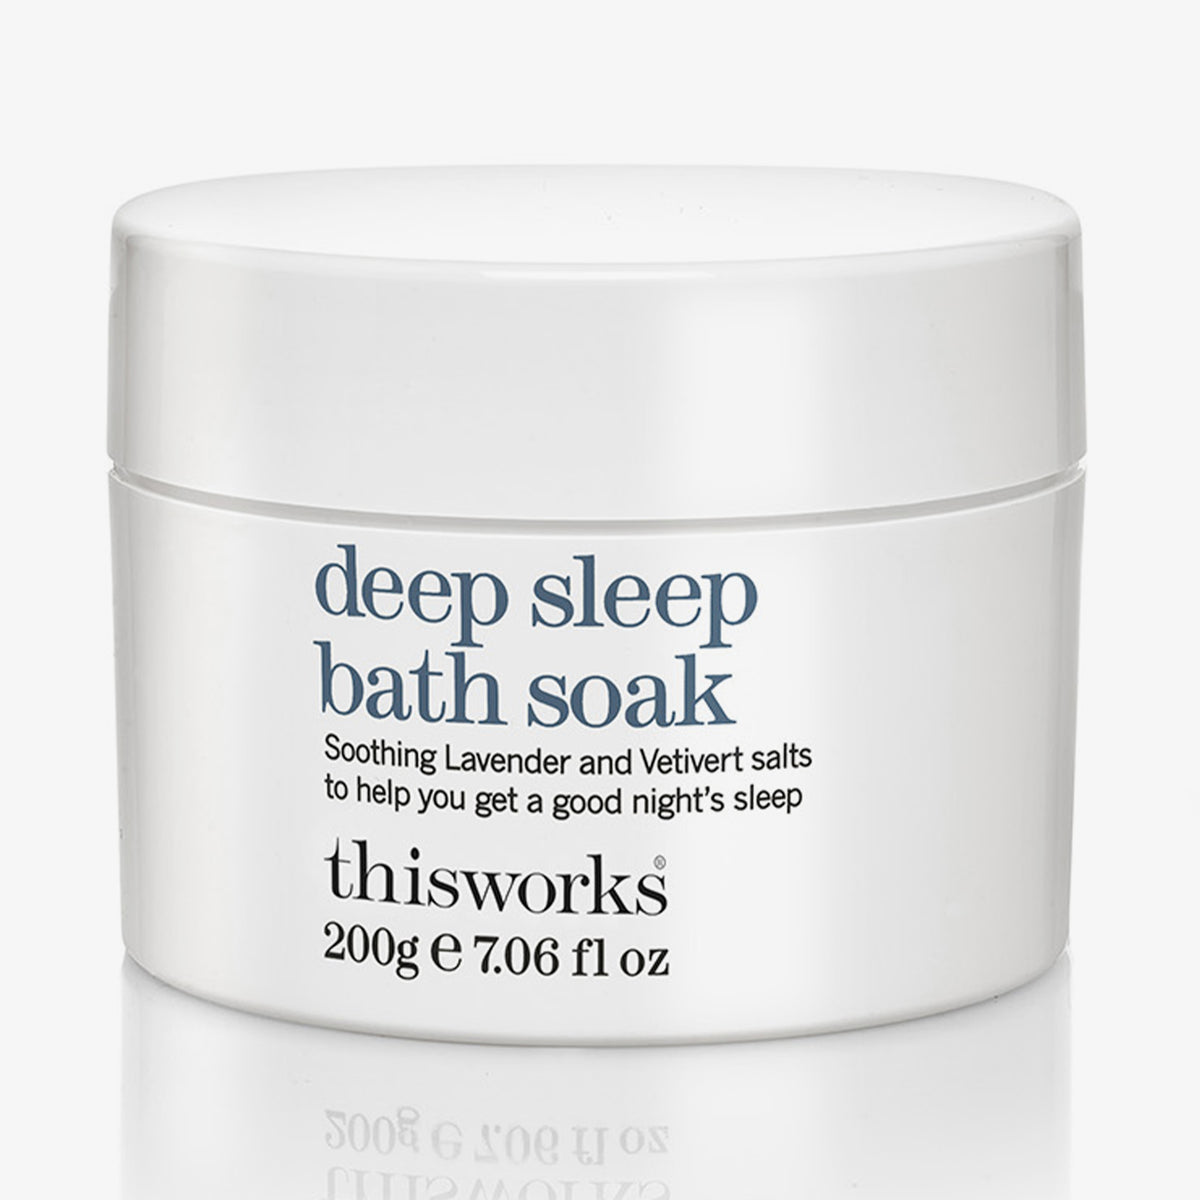 Deep Sleep Bath Soak